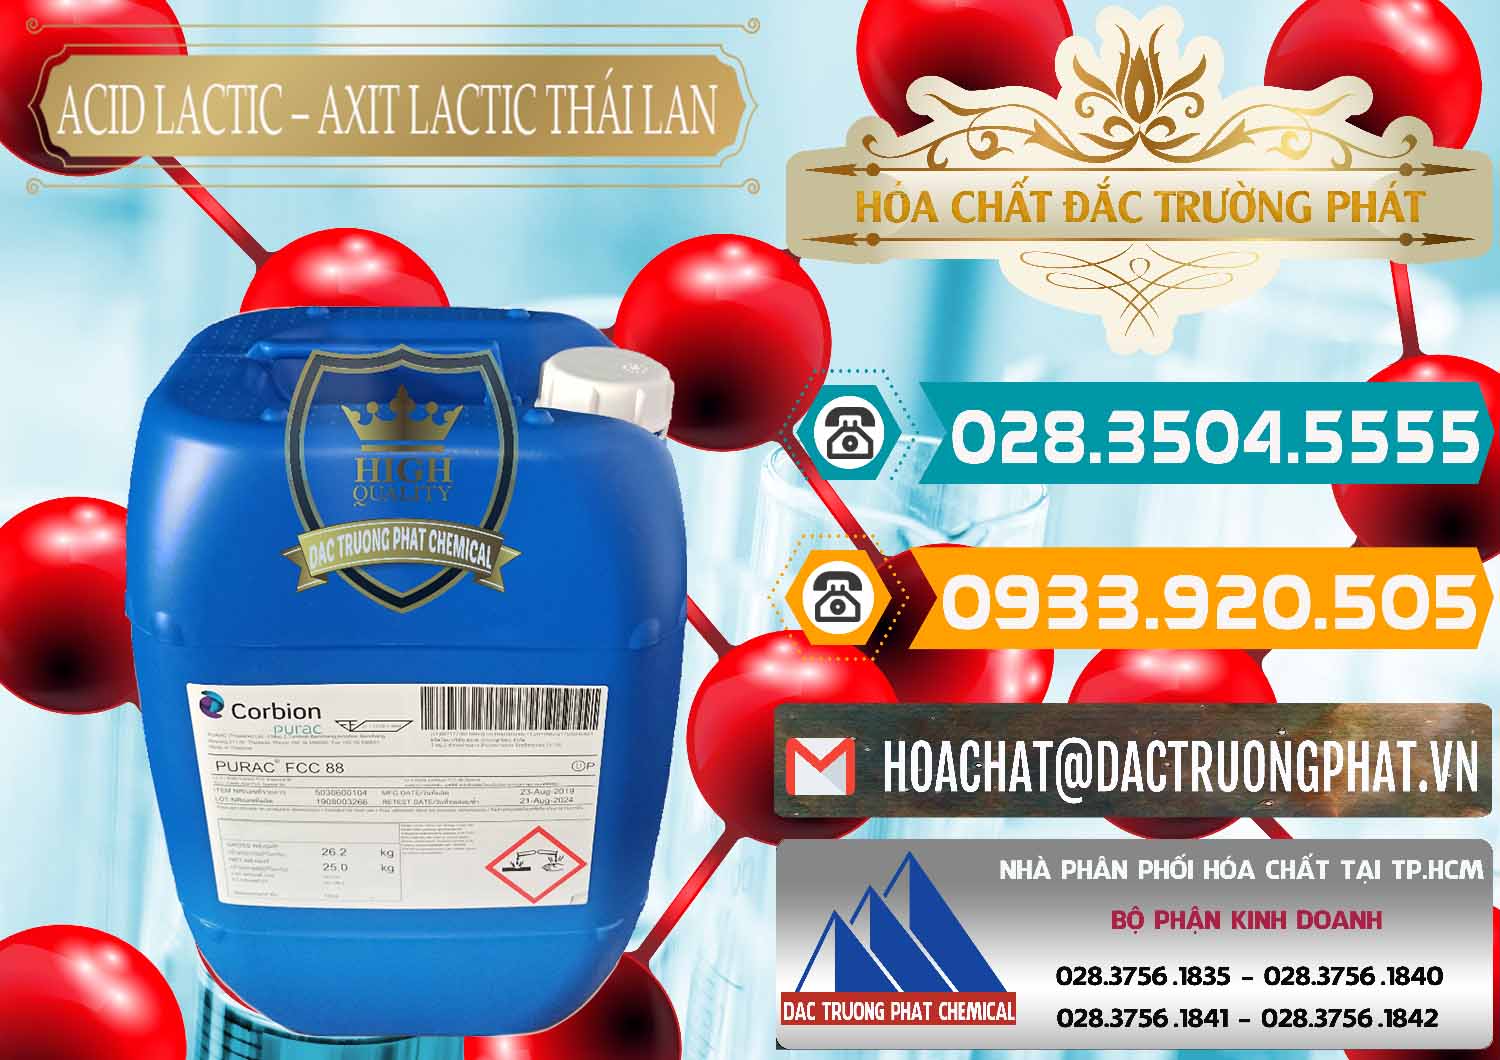 Cty cung cấp và bán Acid Lactic – Axit Lactic Thái Lan Purac FCC 88 - 0012 - Nơi cung cấp và phân phối hóa chất tại TP.HCM - congtyhoachat.vn